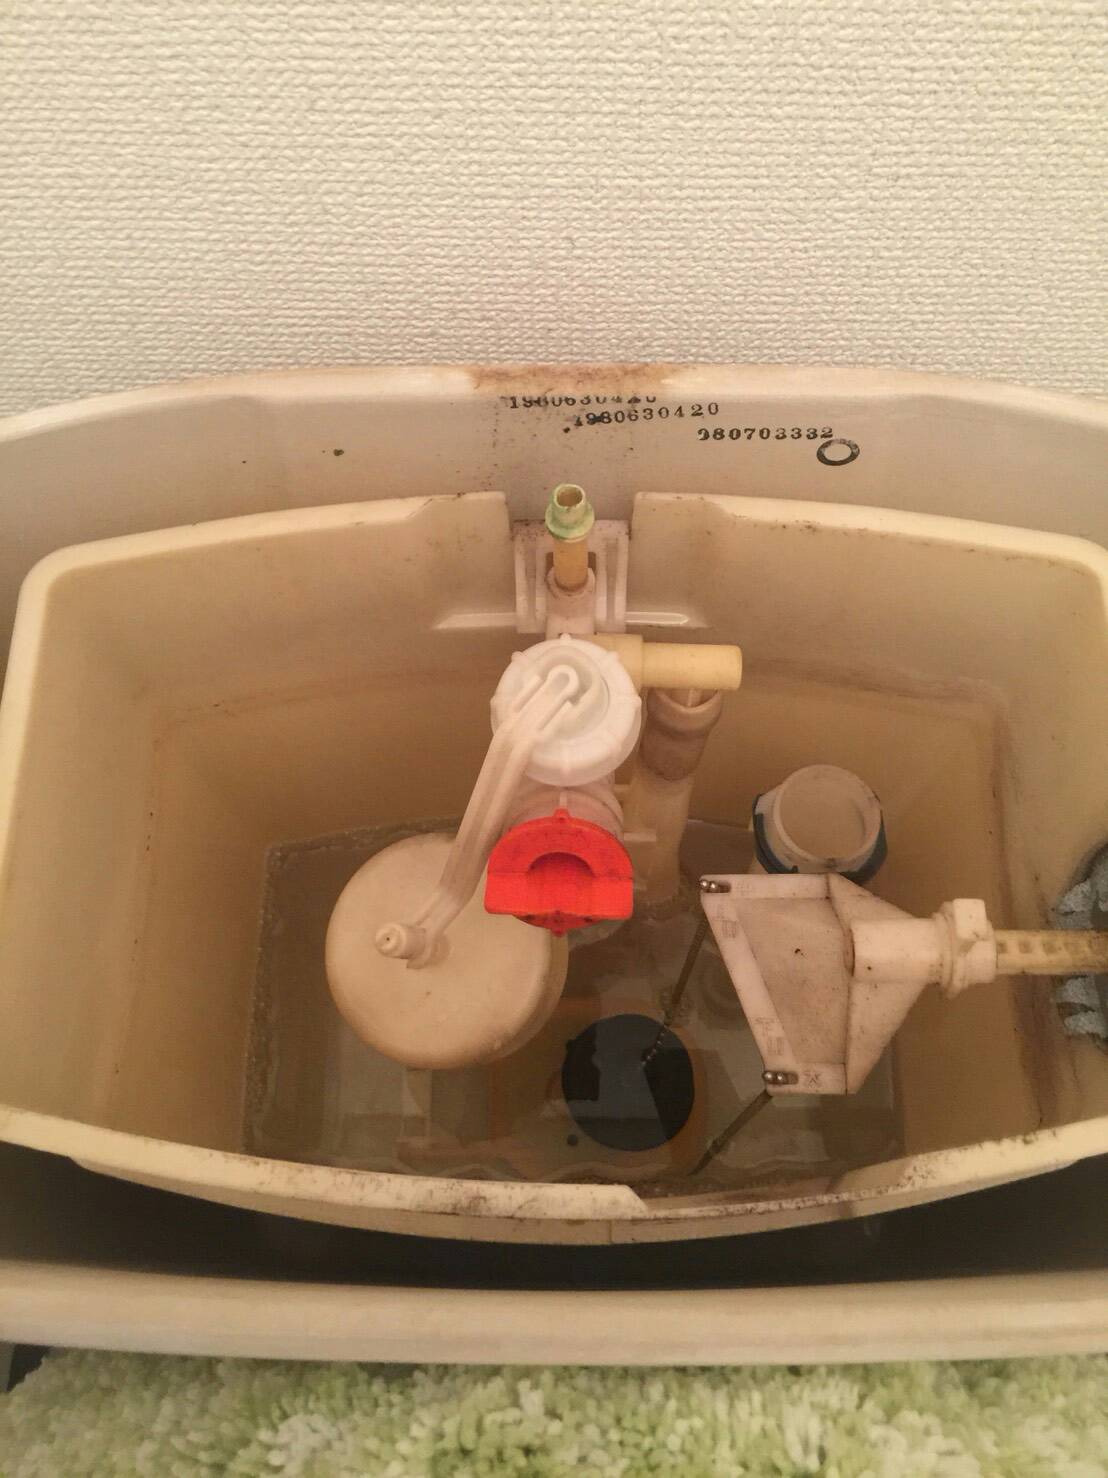 トイレタンクの水が貯まらない症状が出ていました。